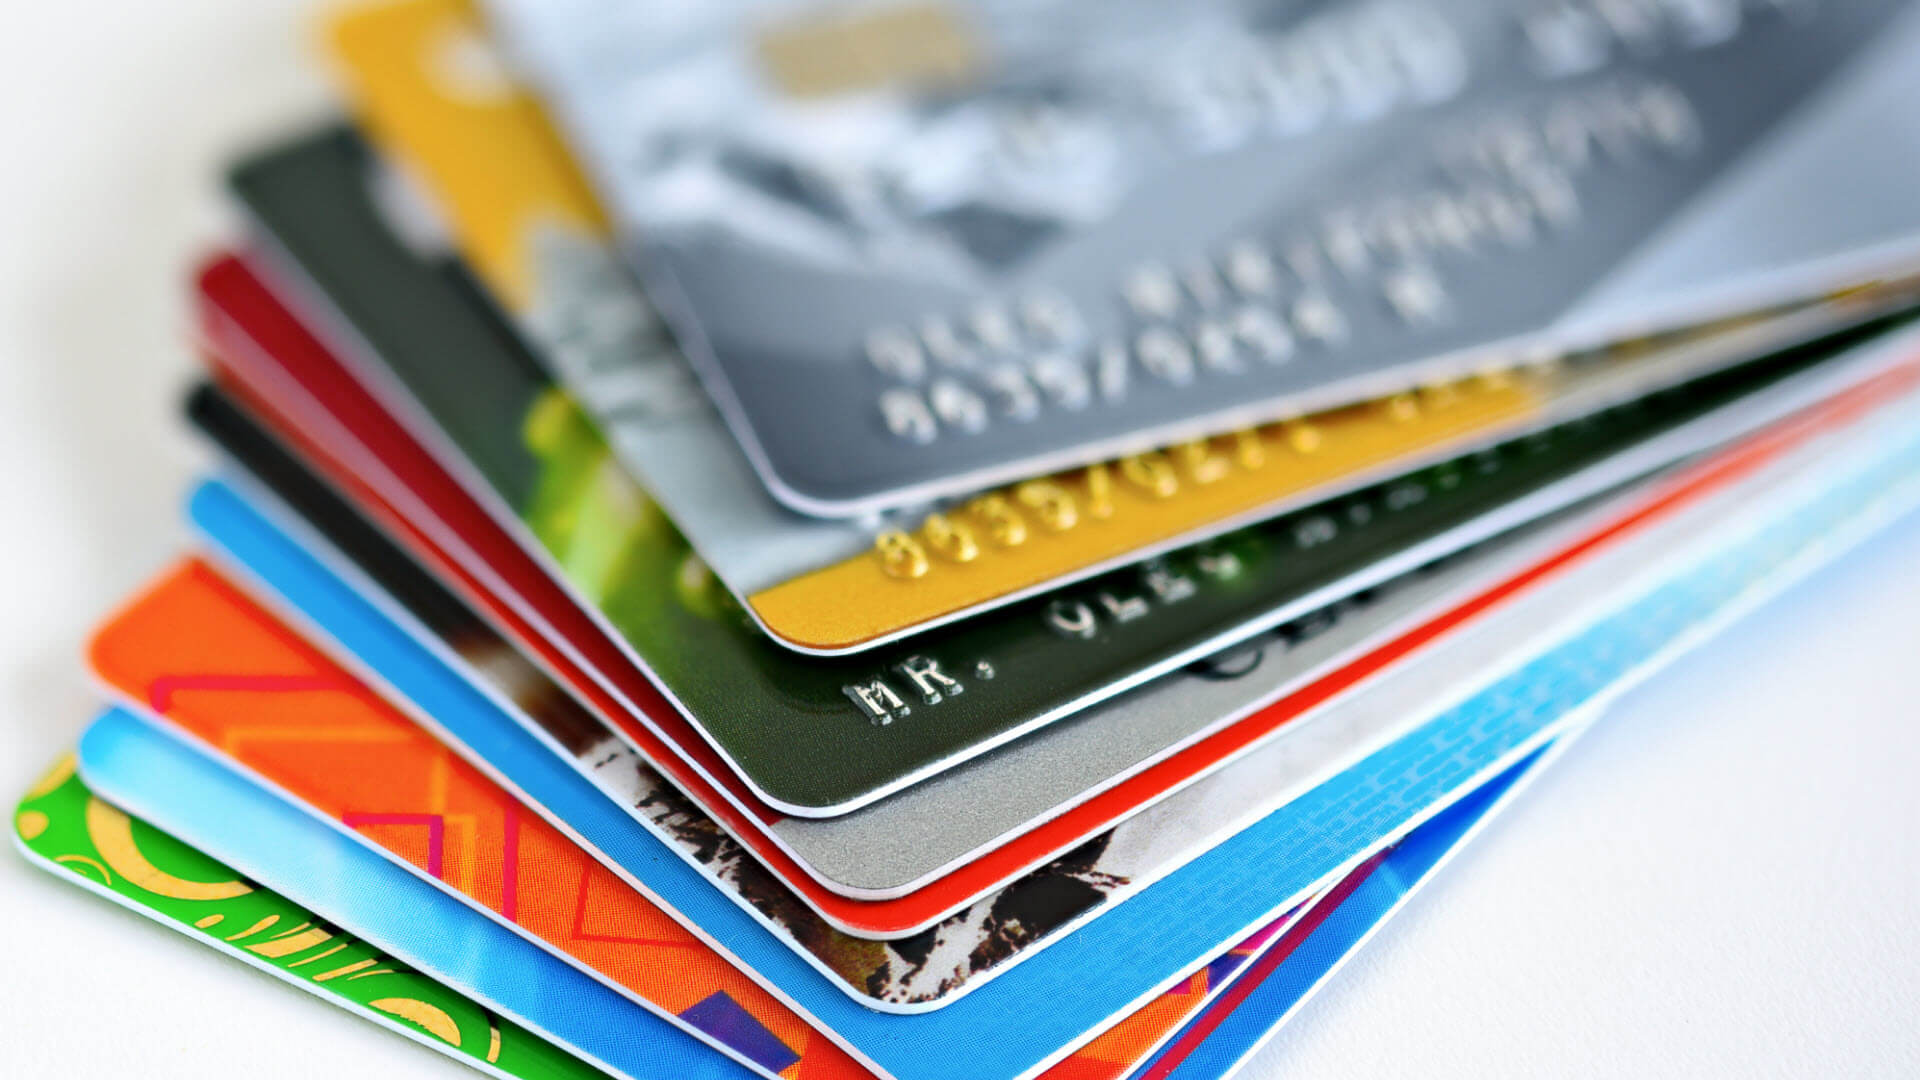 Filtran gratis base con datos de más de 2 millones de tarjetas de crédito y débito